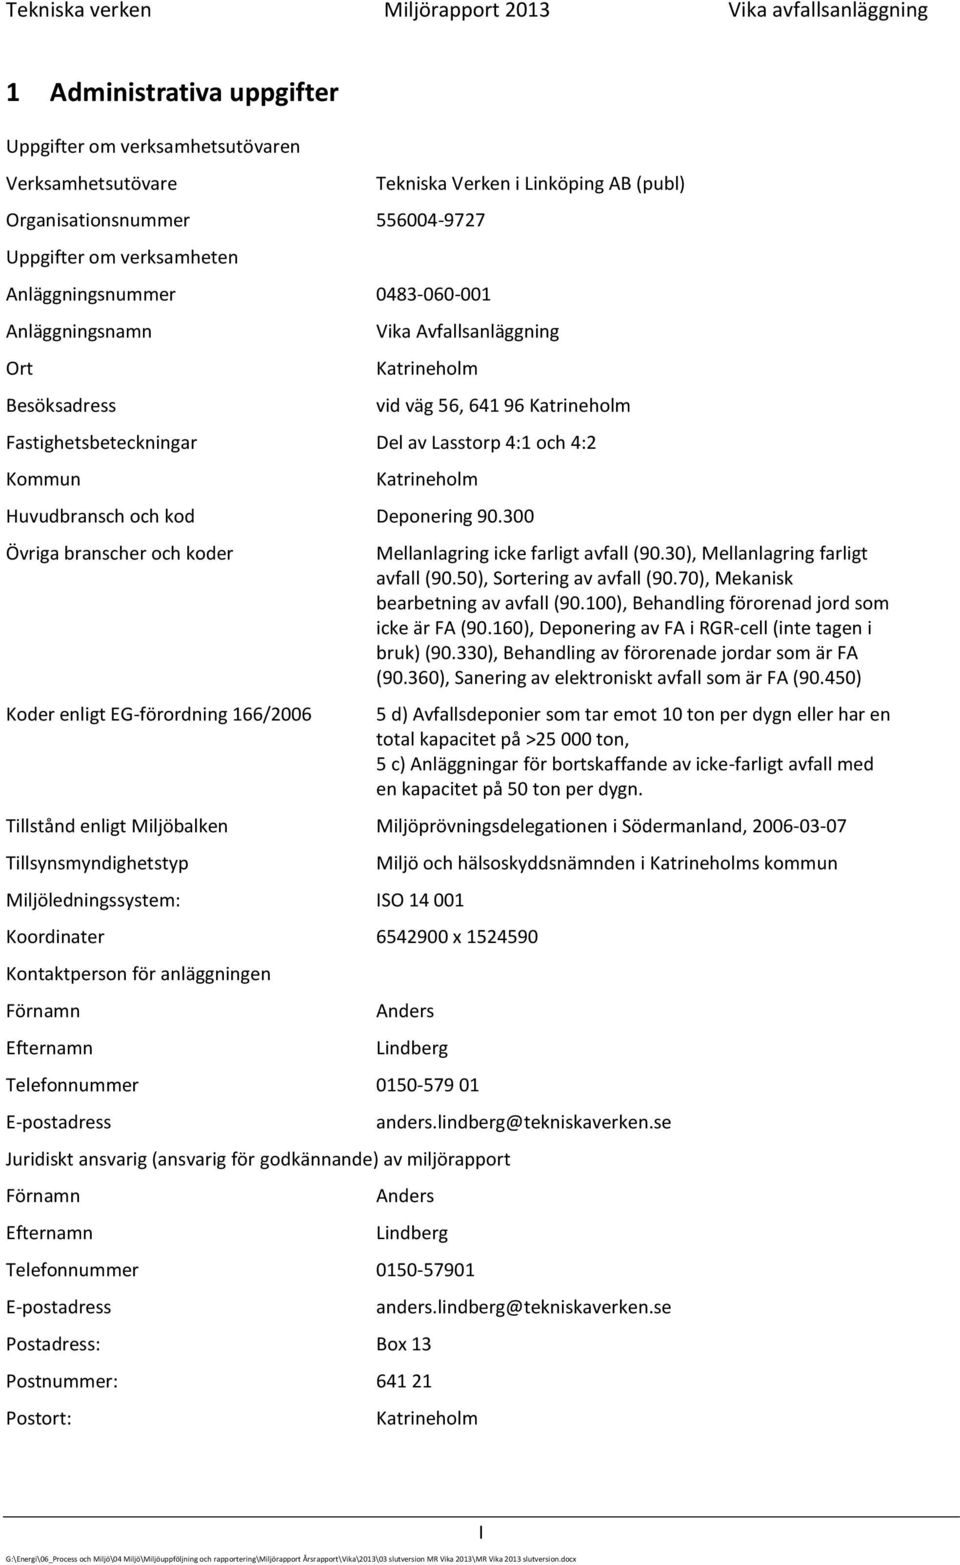 Lasstorp 4:1 och 4:2 Kommun Katrineholm Huvudbransch och kod Deponering 90.300 Övriga branscher och koder Koder enligt EG-förordning 166/2006 Mellanlagring icke farligt avfall (90.